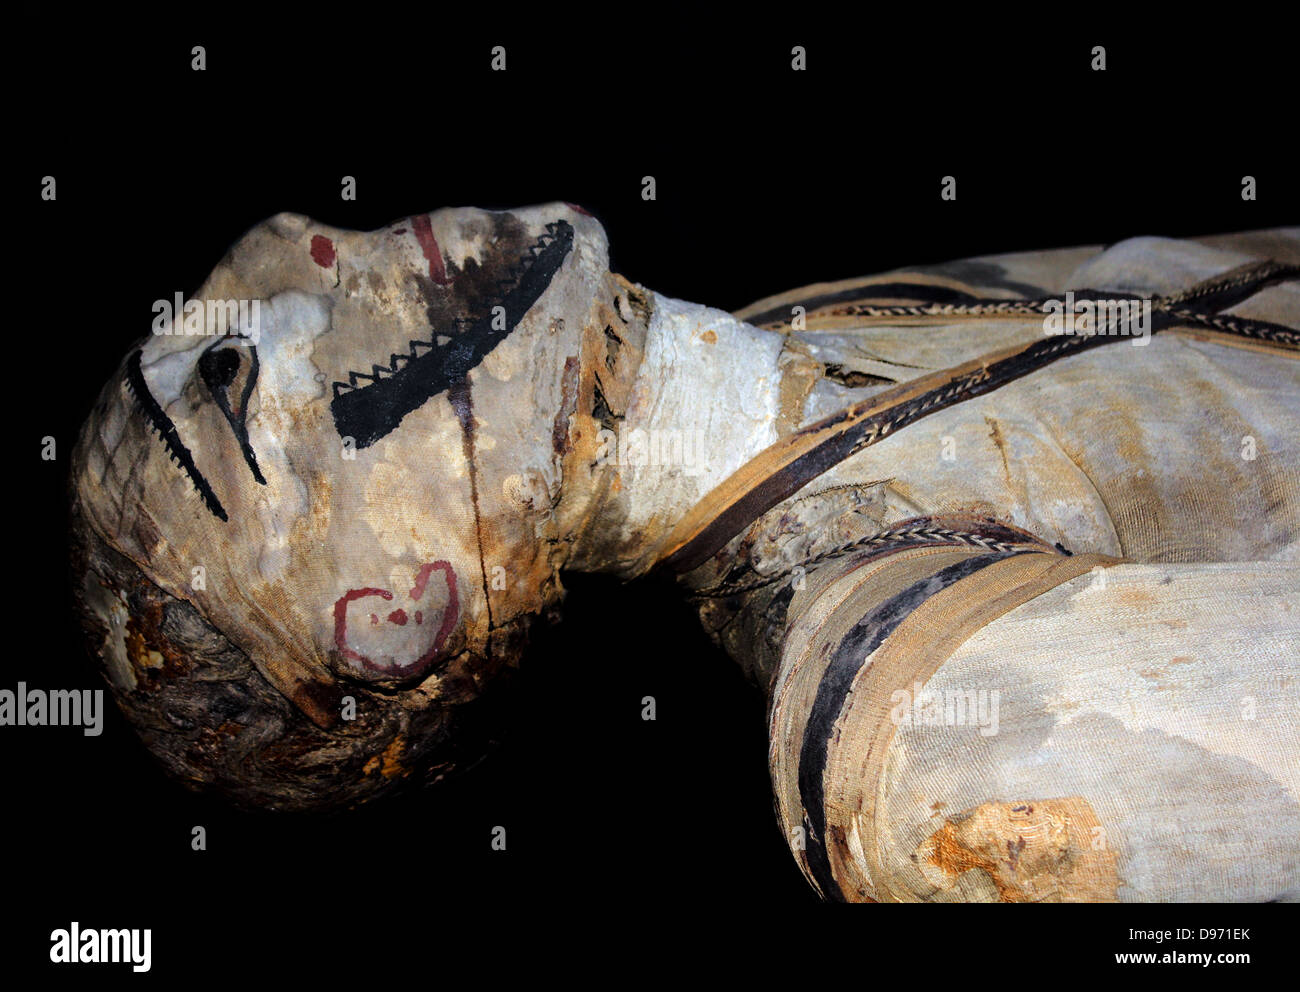 Cercueil en bois peint et maman de Djedhor. Période ptolémaïque, environ 250 BC de. d'Akhmim Les boîtes extérieurs de cette momie ont été soigneusement recouvert d'une substance noire, qui avait été identifié comme l'asphalte chimiquement à partir de la Mer Morte. Cela appuie les déclarations d'historiens classiques tels que Diodorus Sculus et Strabon (1er siècle après JC), que l'asphalte de la mer Morte a été exporté à l'Egypte pour utilisation dans la momification. Banque D'Images